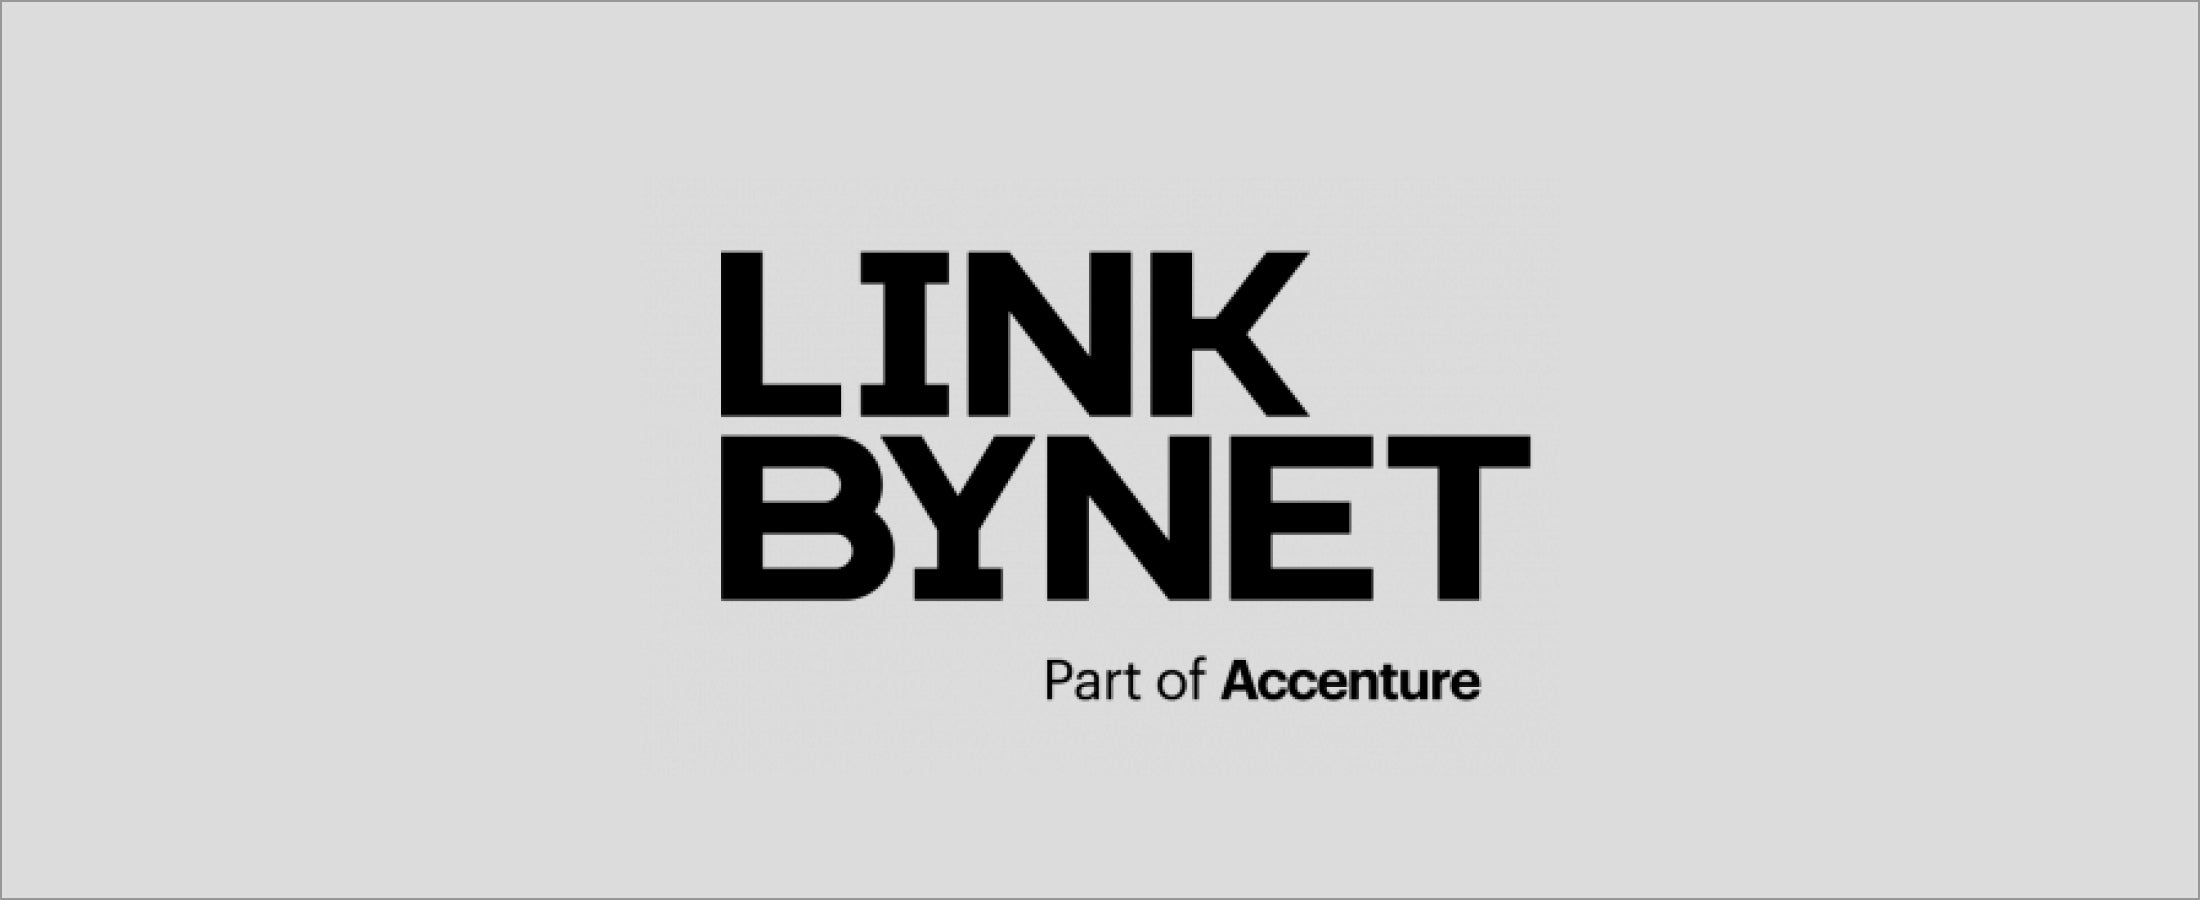 Link by Net logo